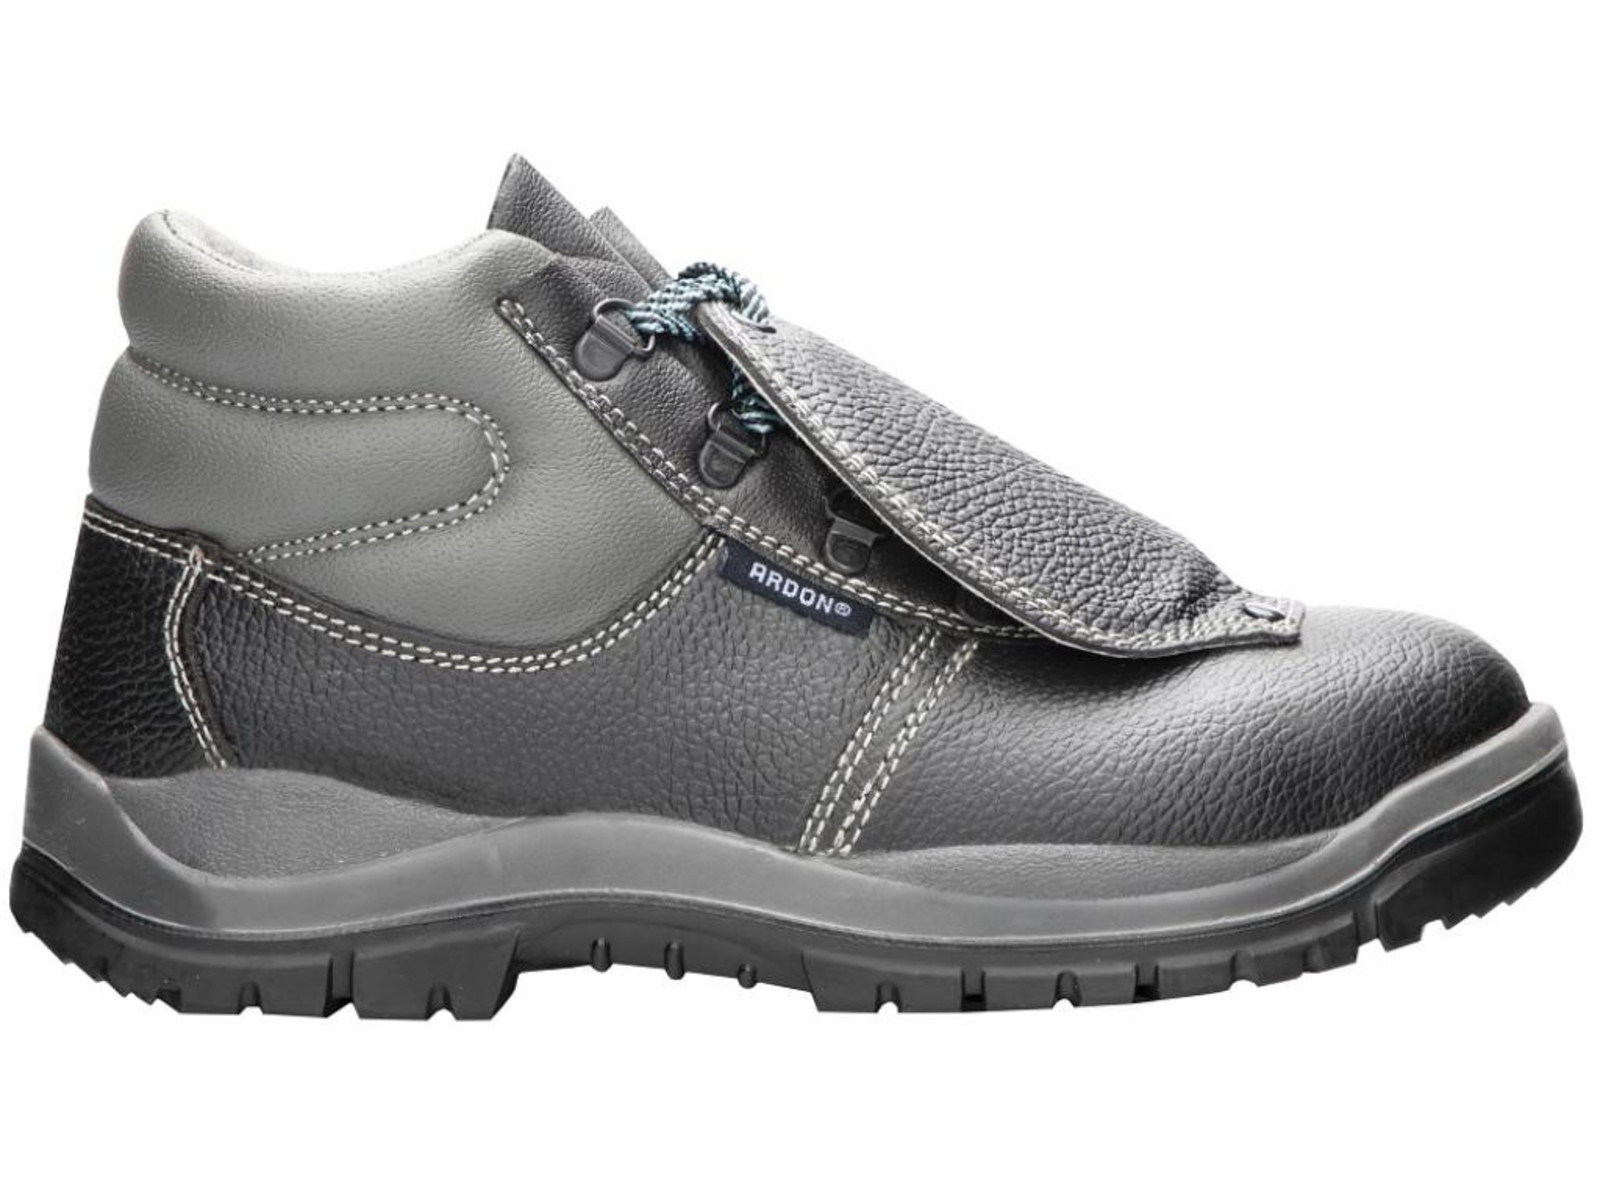 Bezpečnostná obuv ARDON® Integral S1P - veľkosť: 39, farba: sivá/čierna